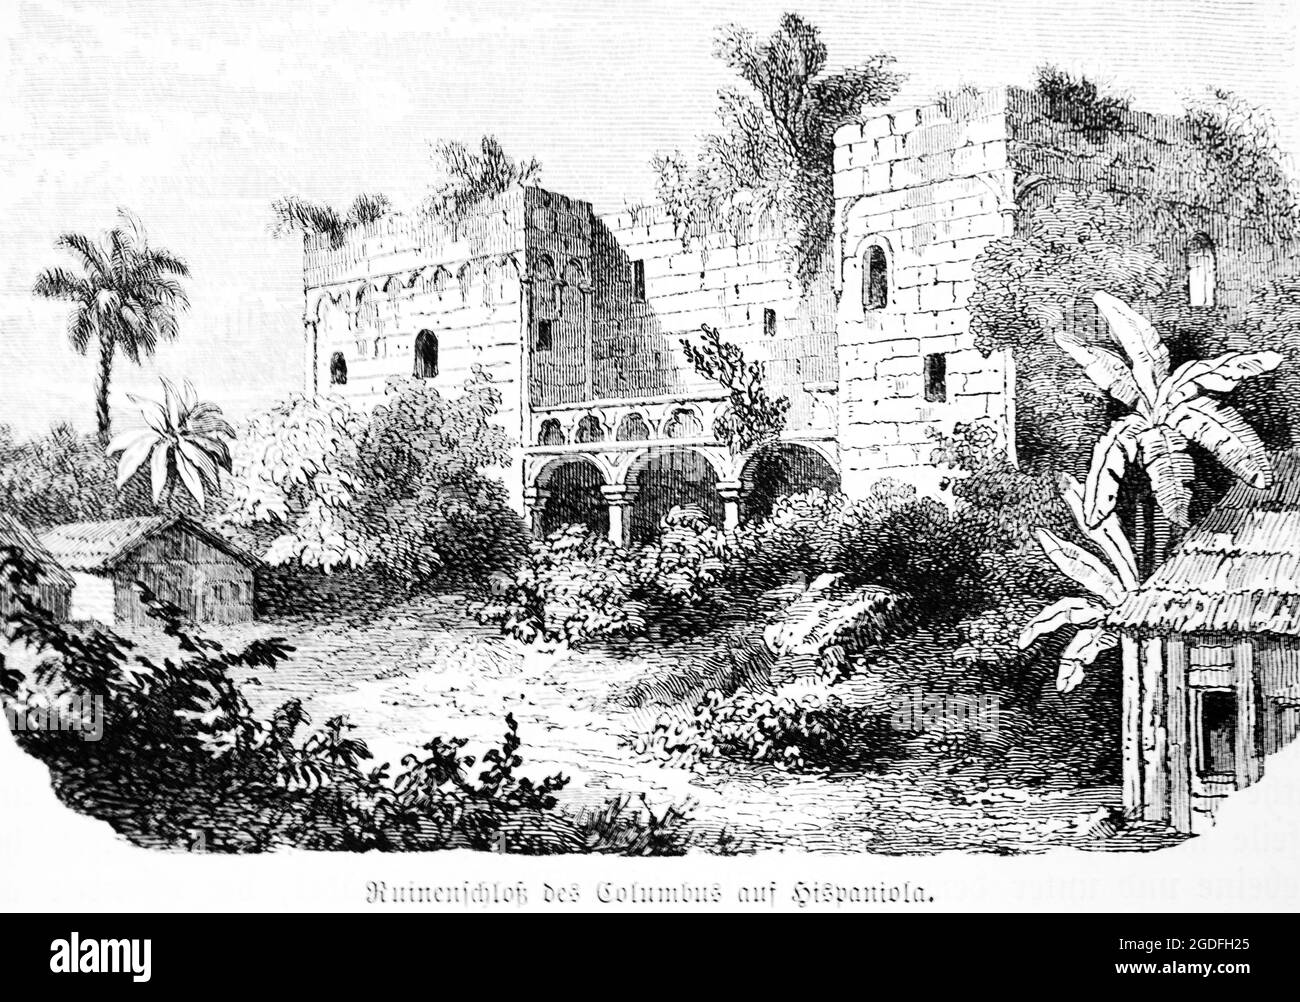 Ruines du château de Christophe Colomb sur Hispaniola, Mer des Caraïbes, Antilles, Grande Antilles, illustration historique 1881 Banque D'Images